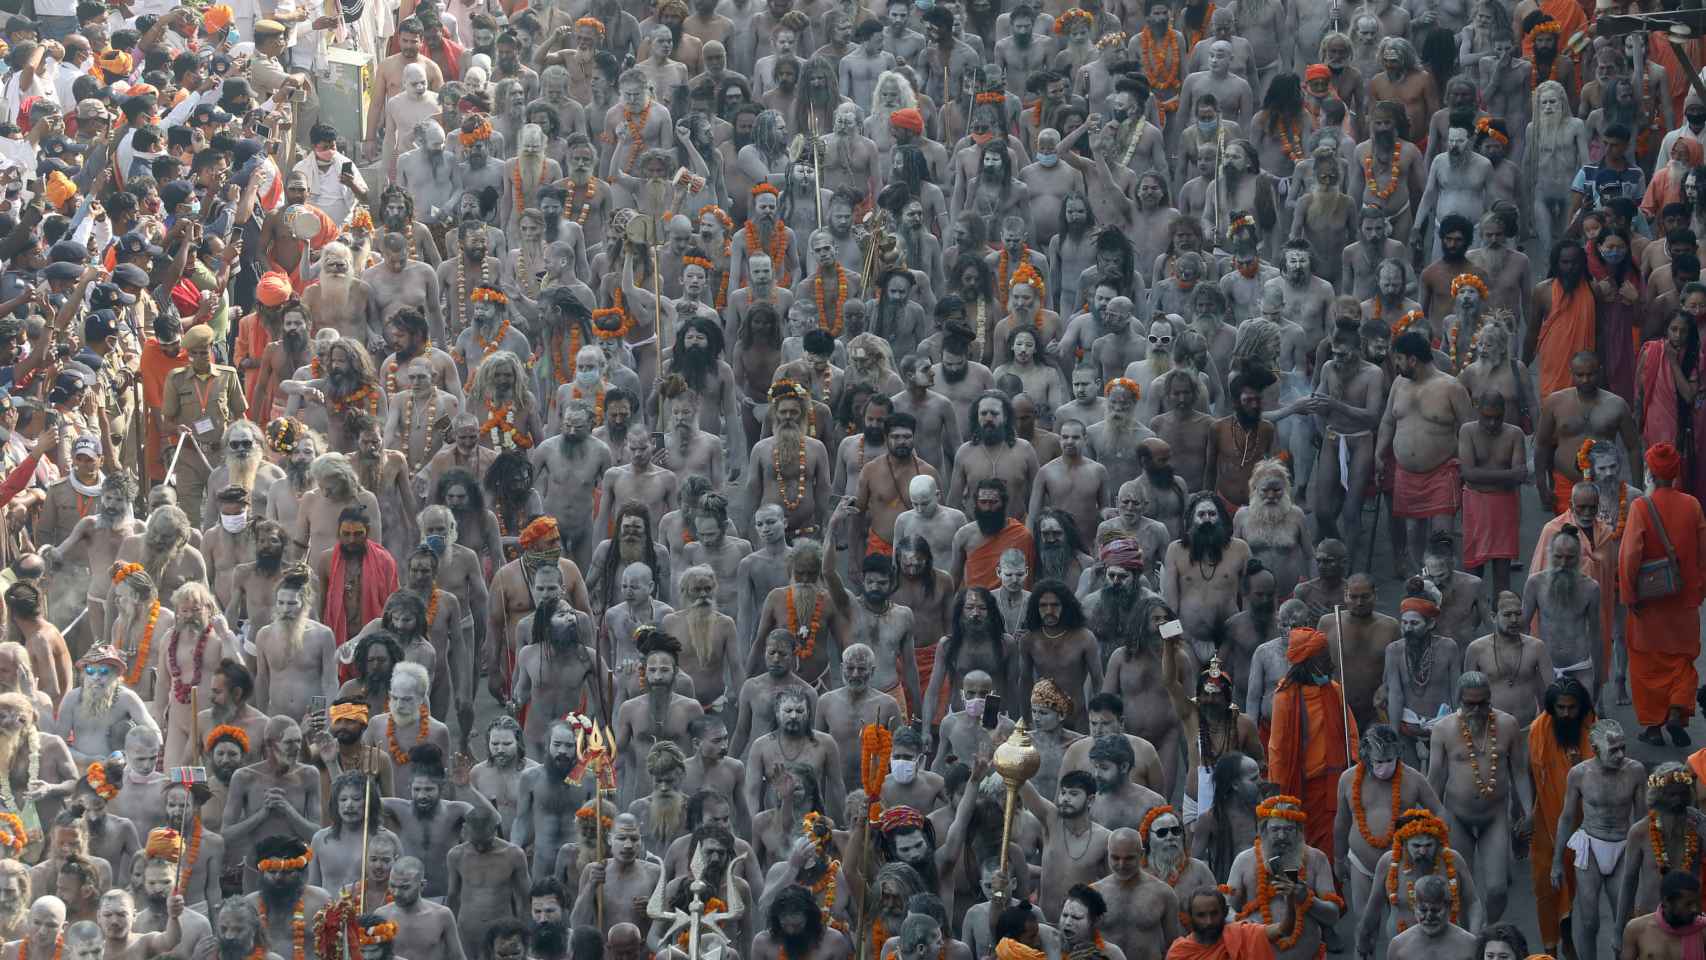 Naga Sadhus participan en la procesión para bañarse en el Ganges durante el Kumbh Mela.